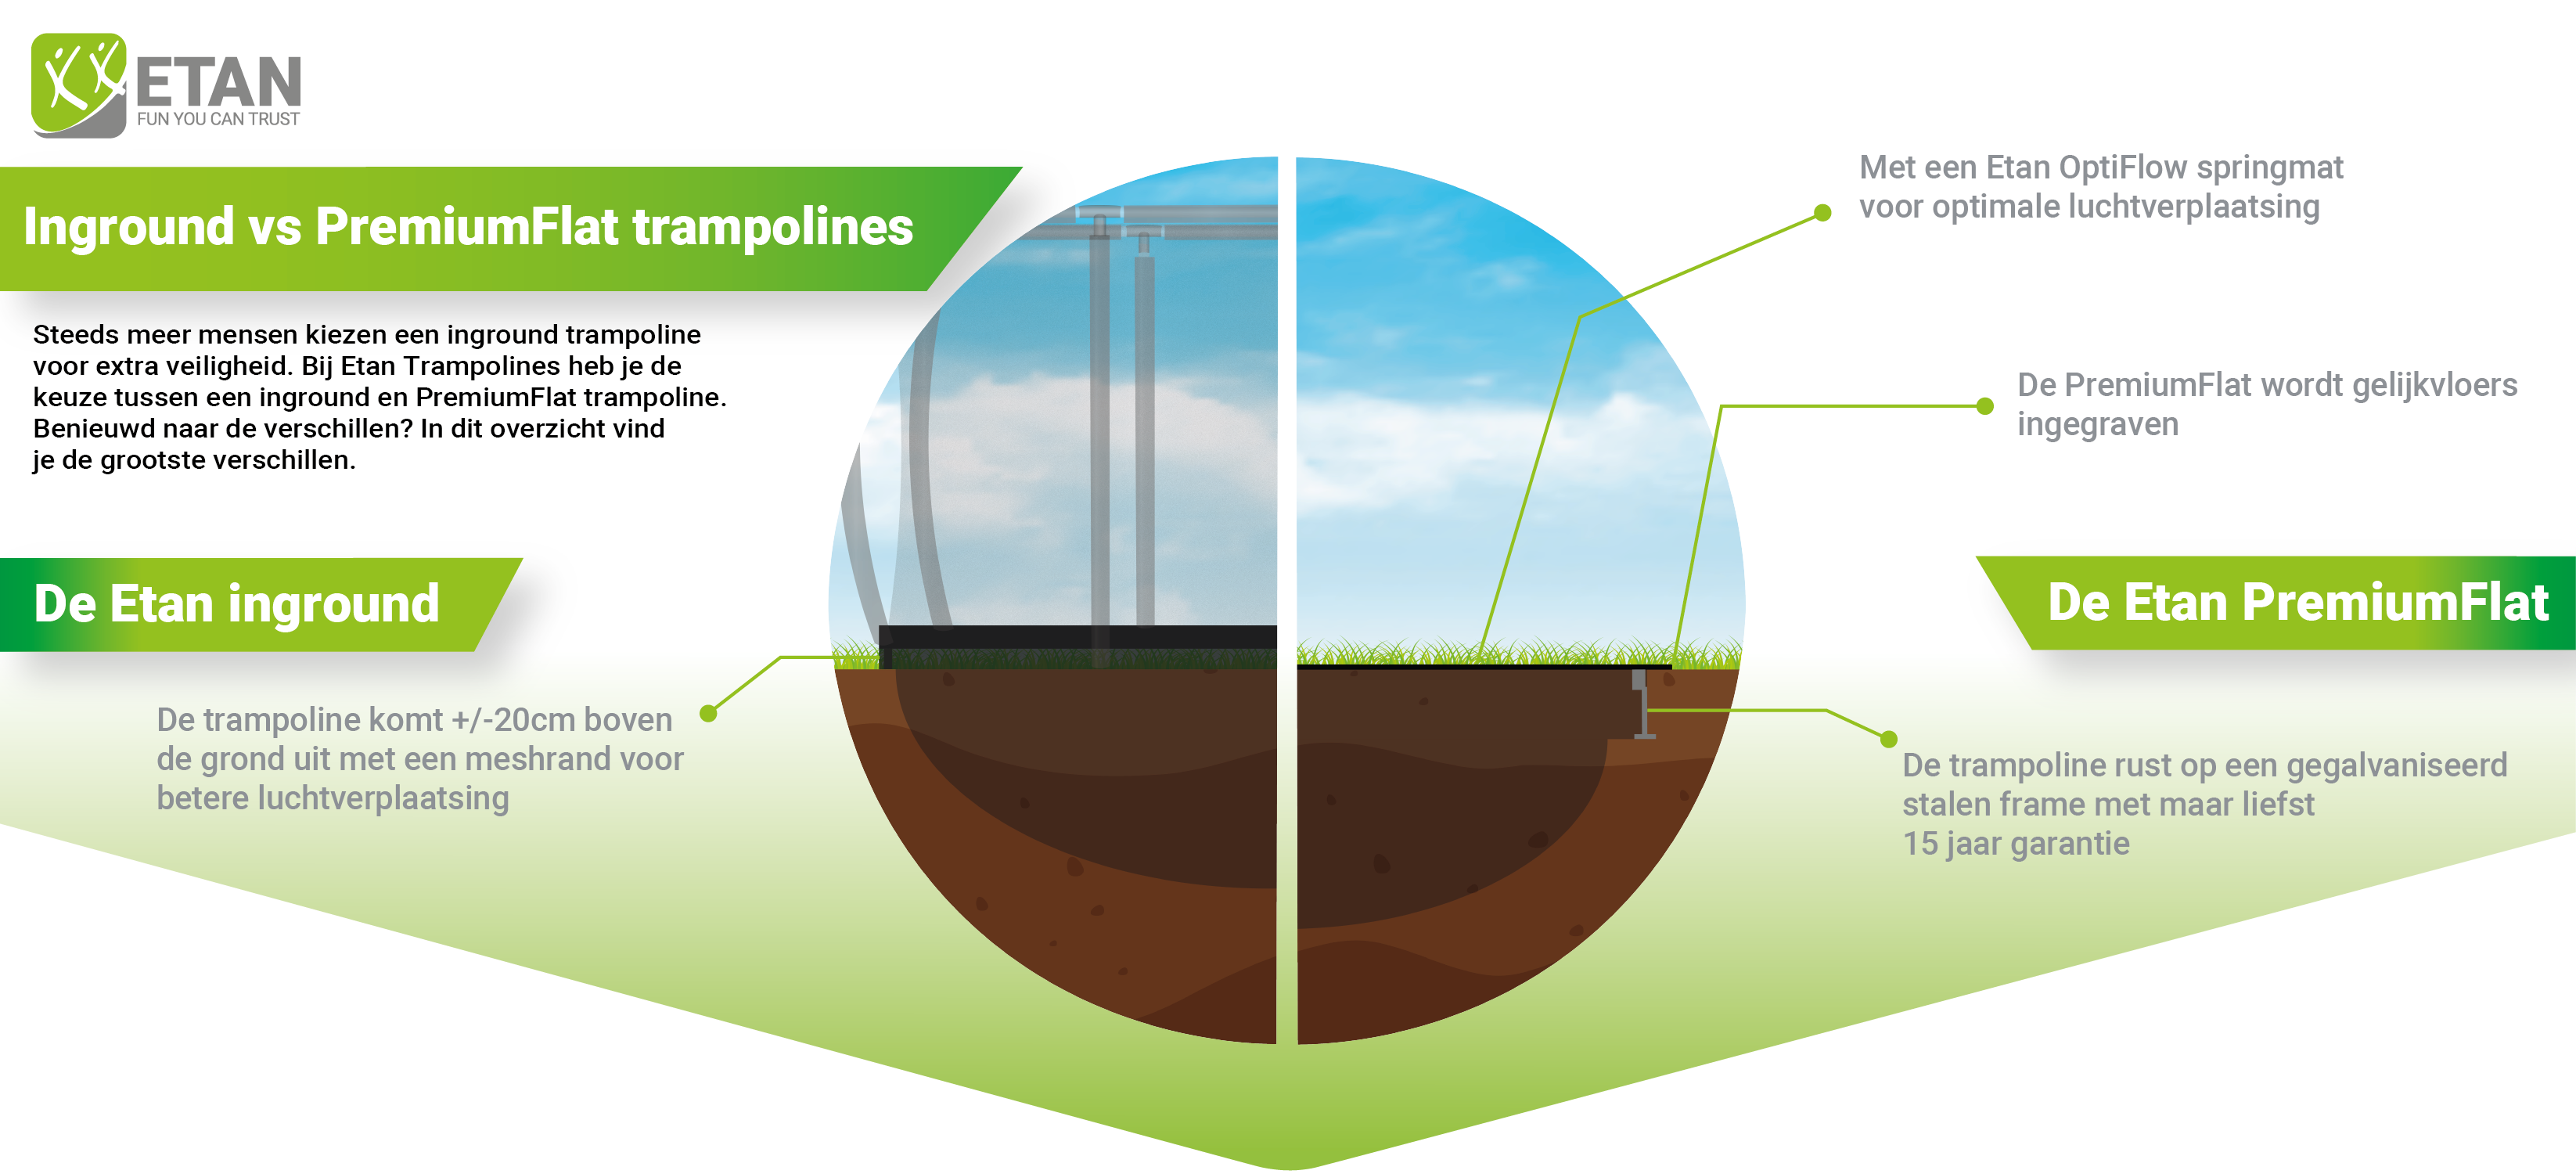 Flat to the ground trampoline versus een inground trampoline - Etan Trampolines